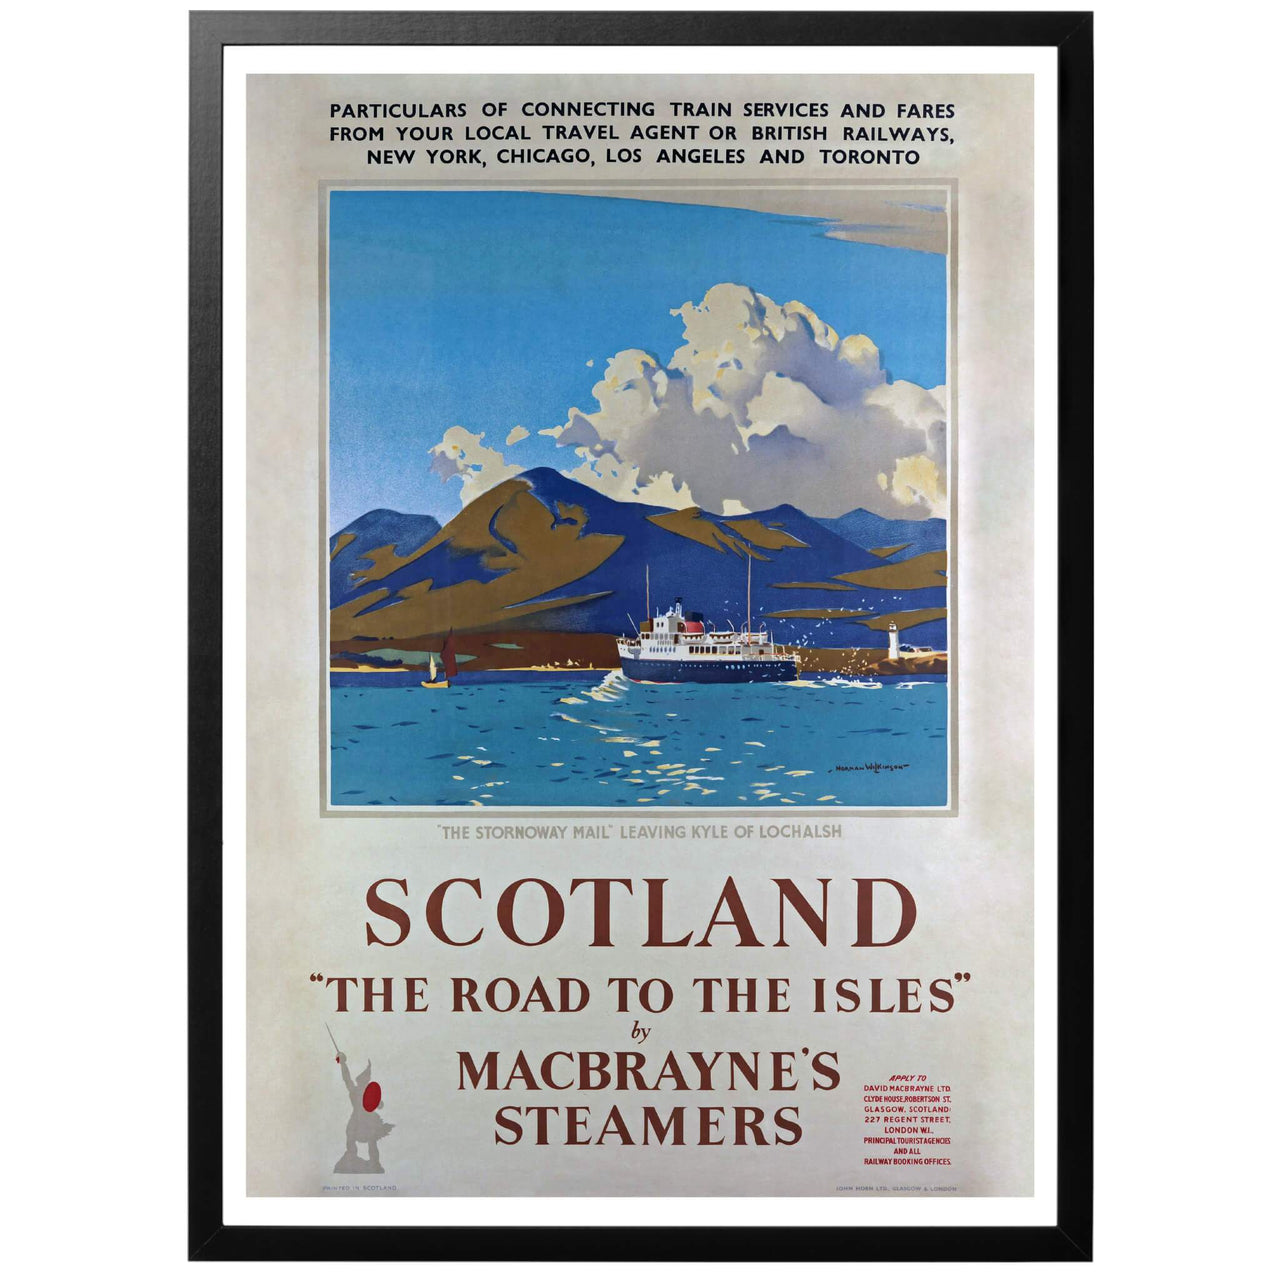 "The road to the Isles" by MacBrayne's steamers. Sv - "Vägen till öarna" med MacBrayne's ångbåtar. Konstnär: Norman Wilkinson. Härlig reseposter för Skottland, utgivet av John Horn LTD. Postern visar ett skepp som åker ut till ön Kyle of Lochals i ögruppen Islay.